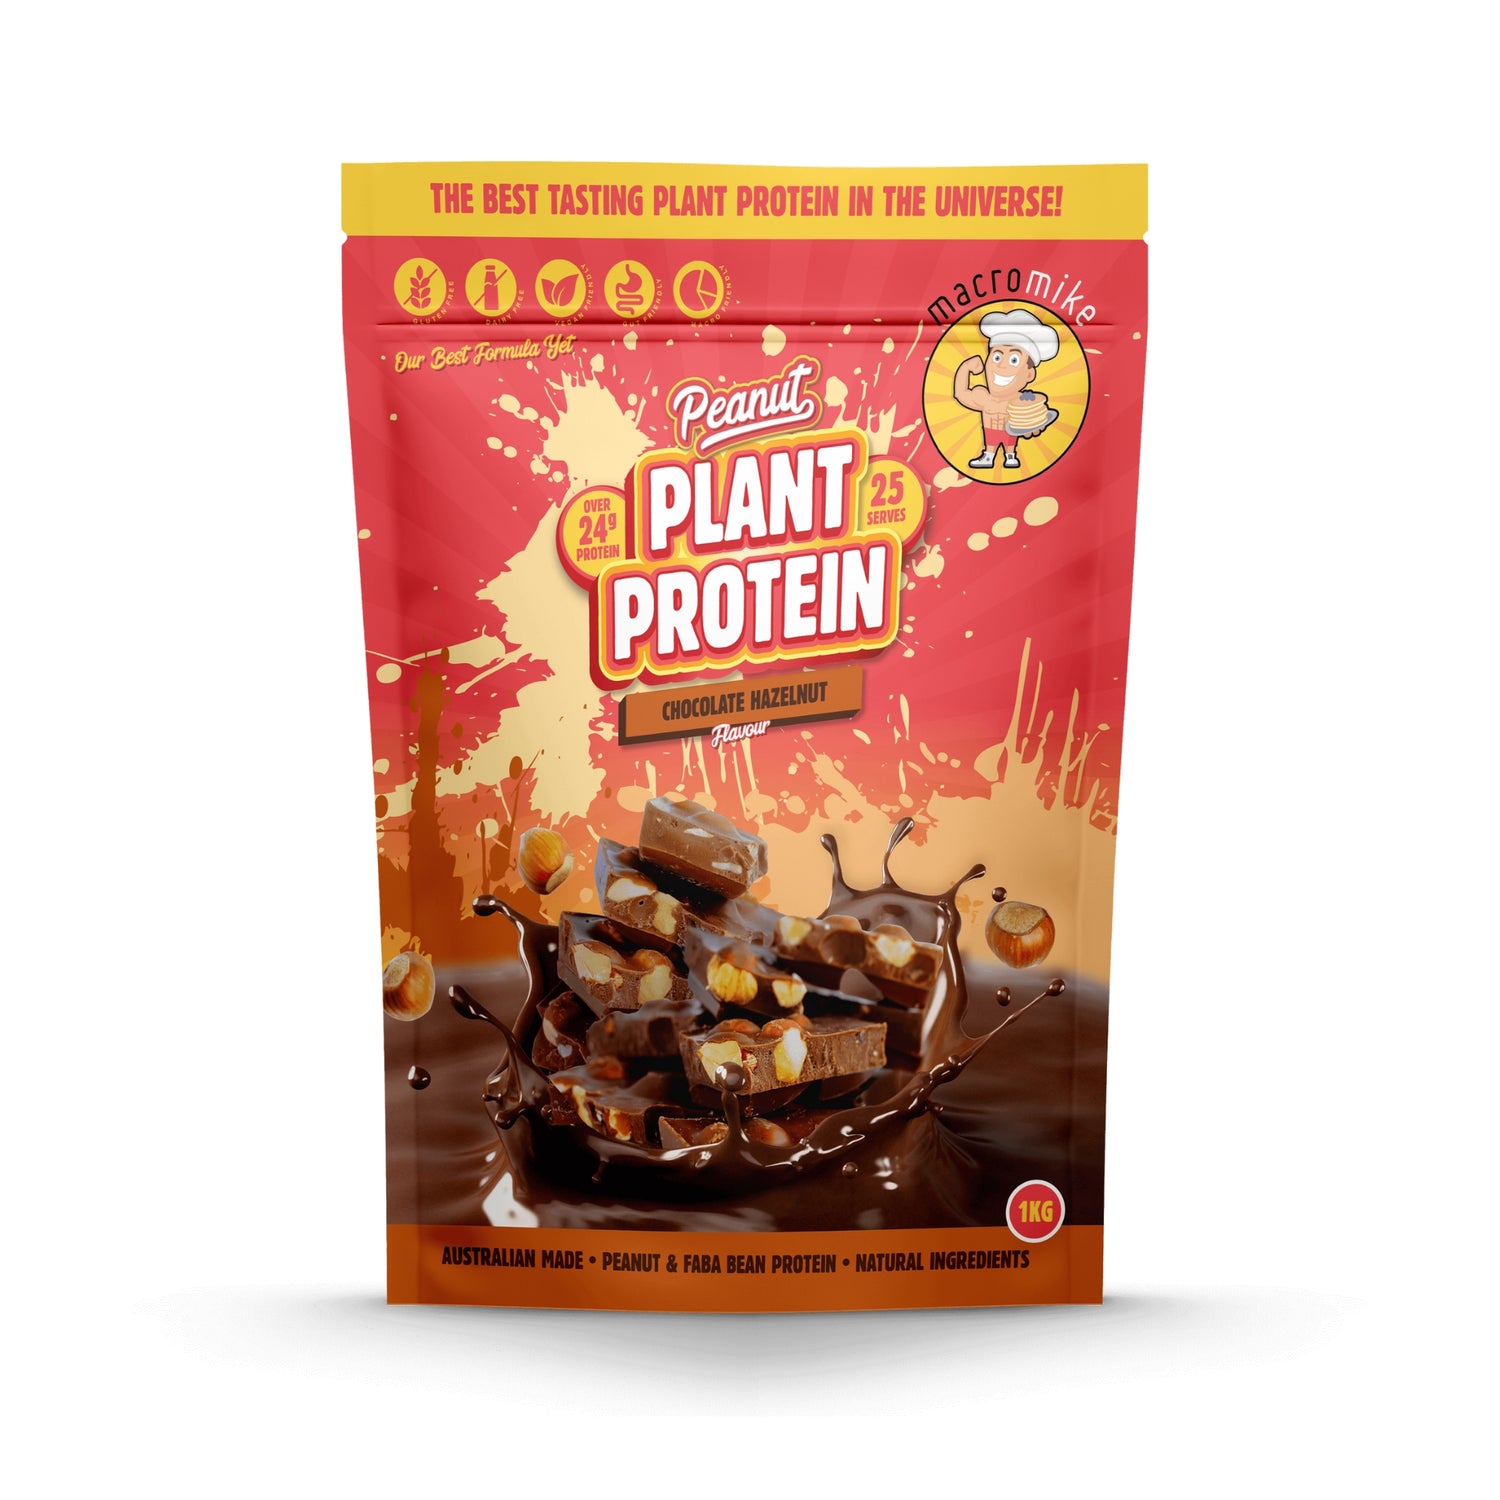 Peanut Plant Protein-Chocolate Hazelnut